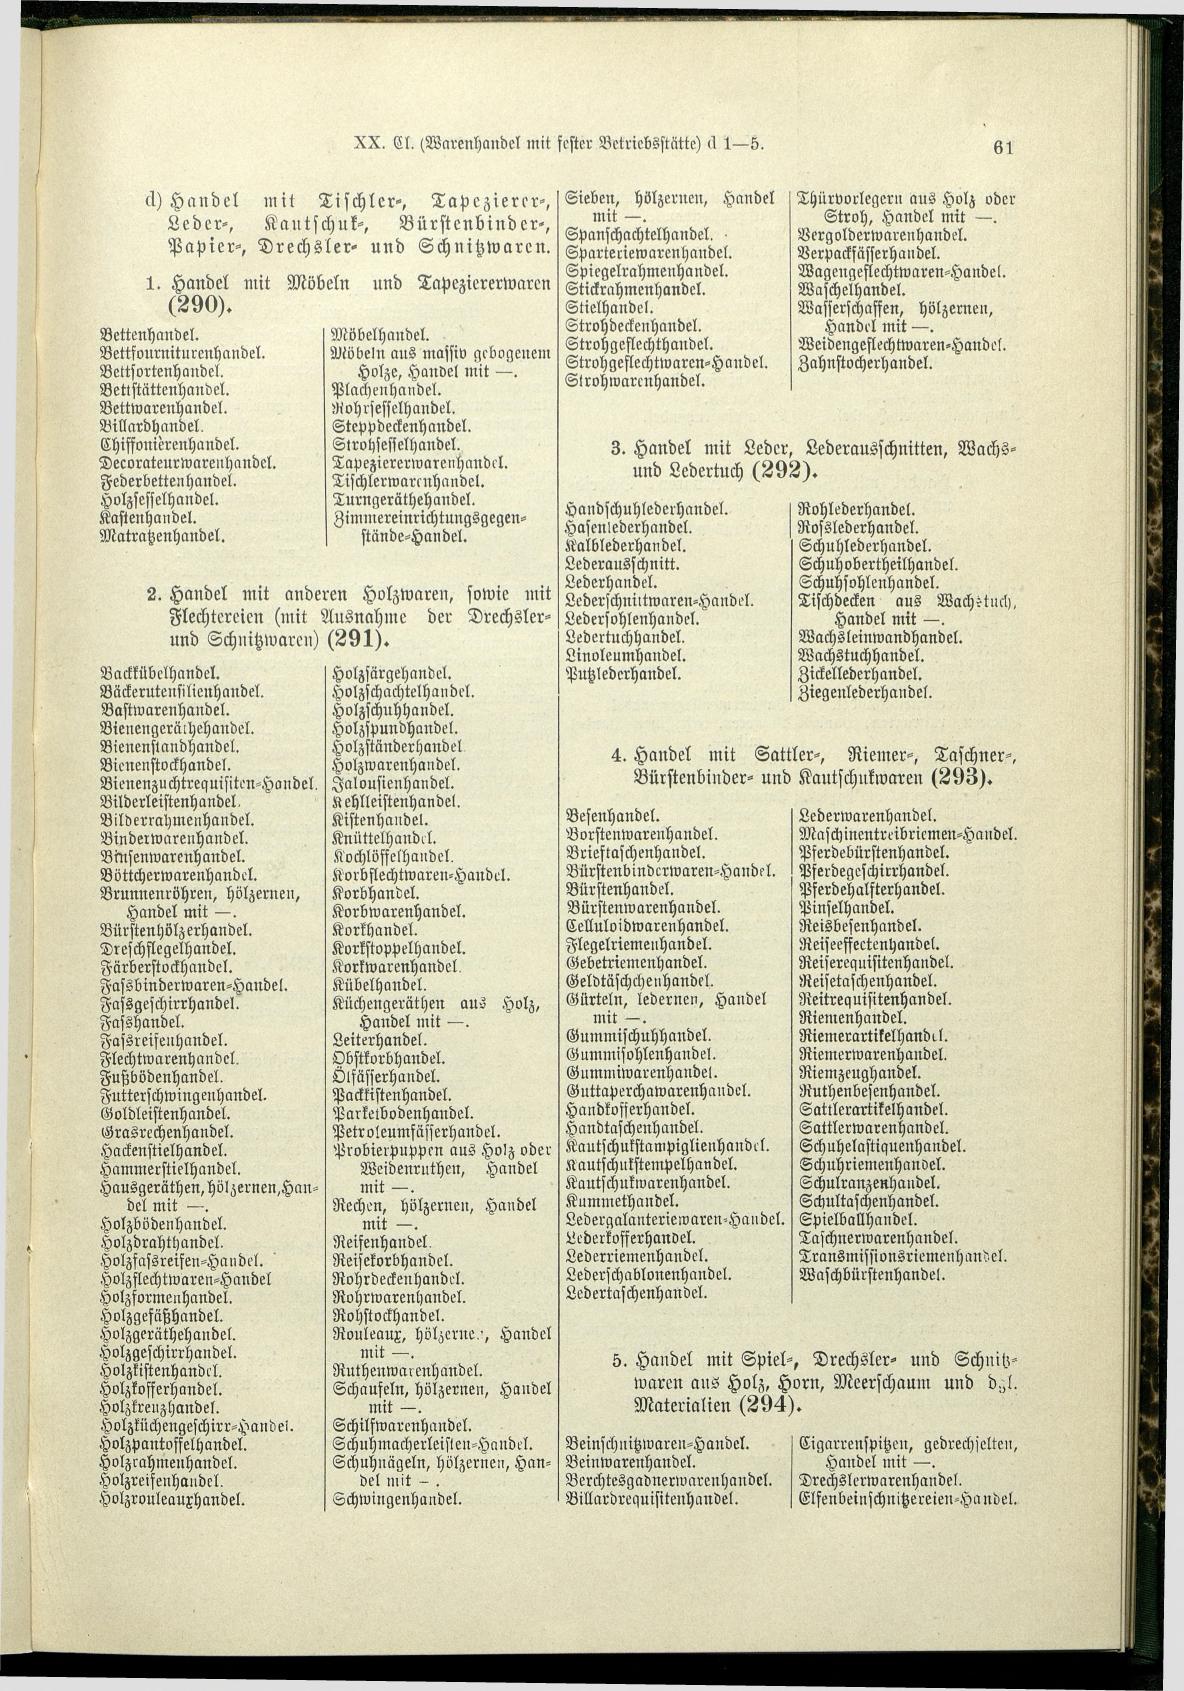 Verzeichnis der Gewerbe der im Reichsrathe vertretenen Königreiche und Länder 1900 - Seite 65